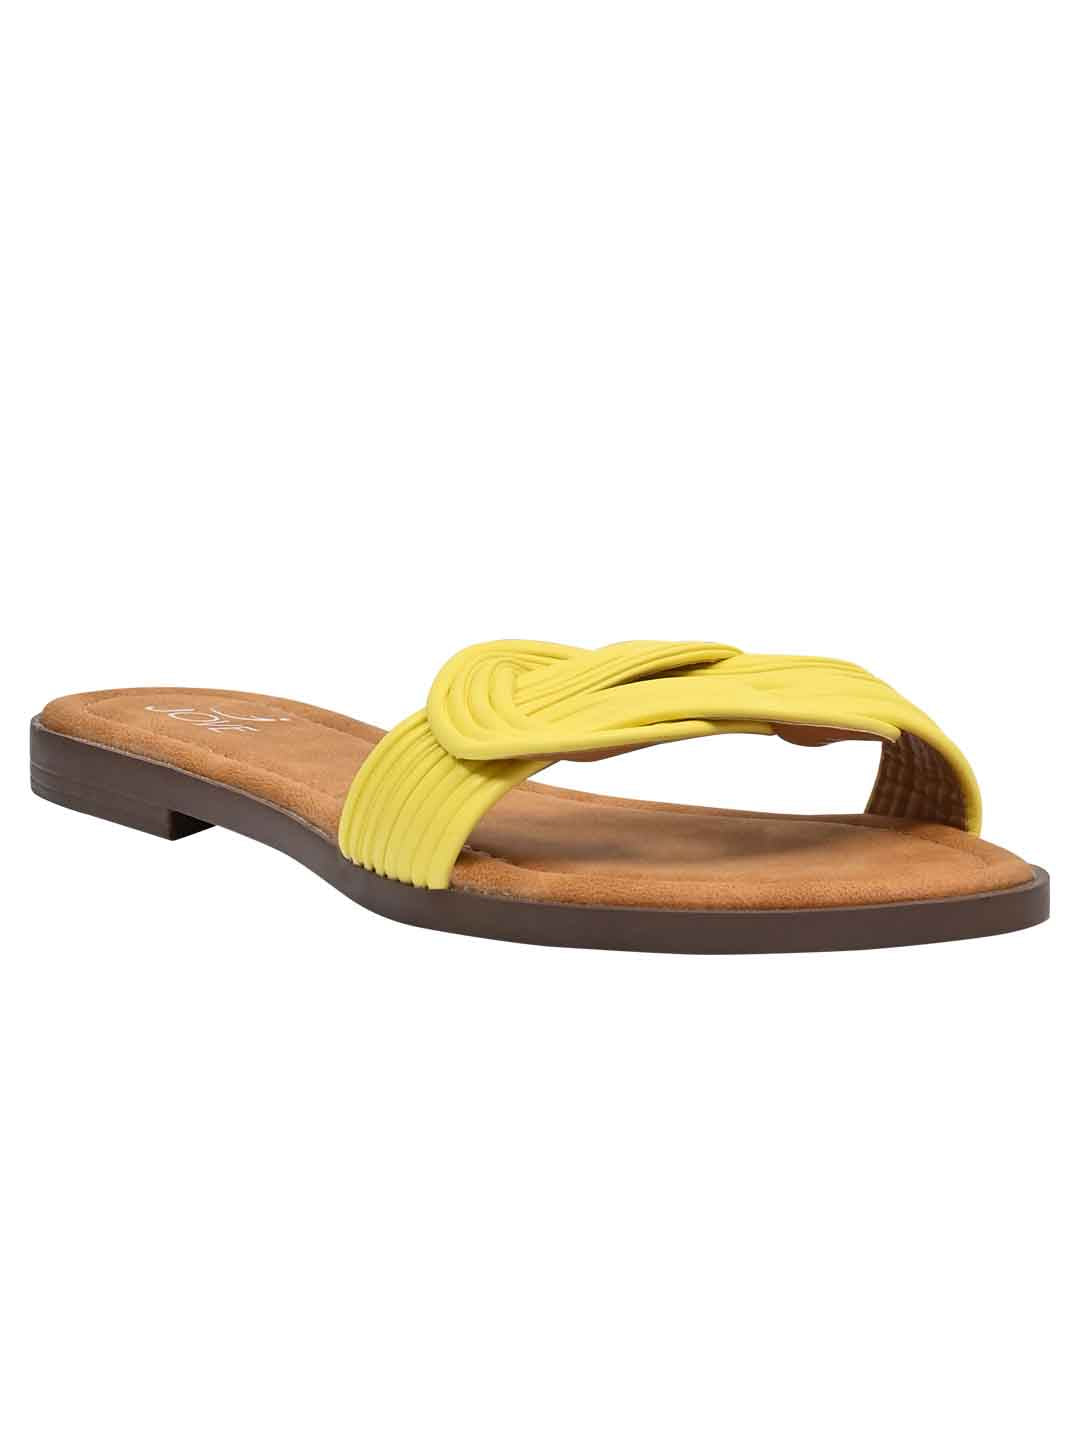 Footwear, Women Footwear, Yellow Open Toe Flats